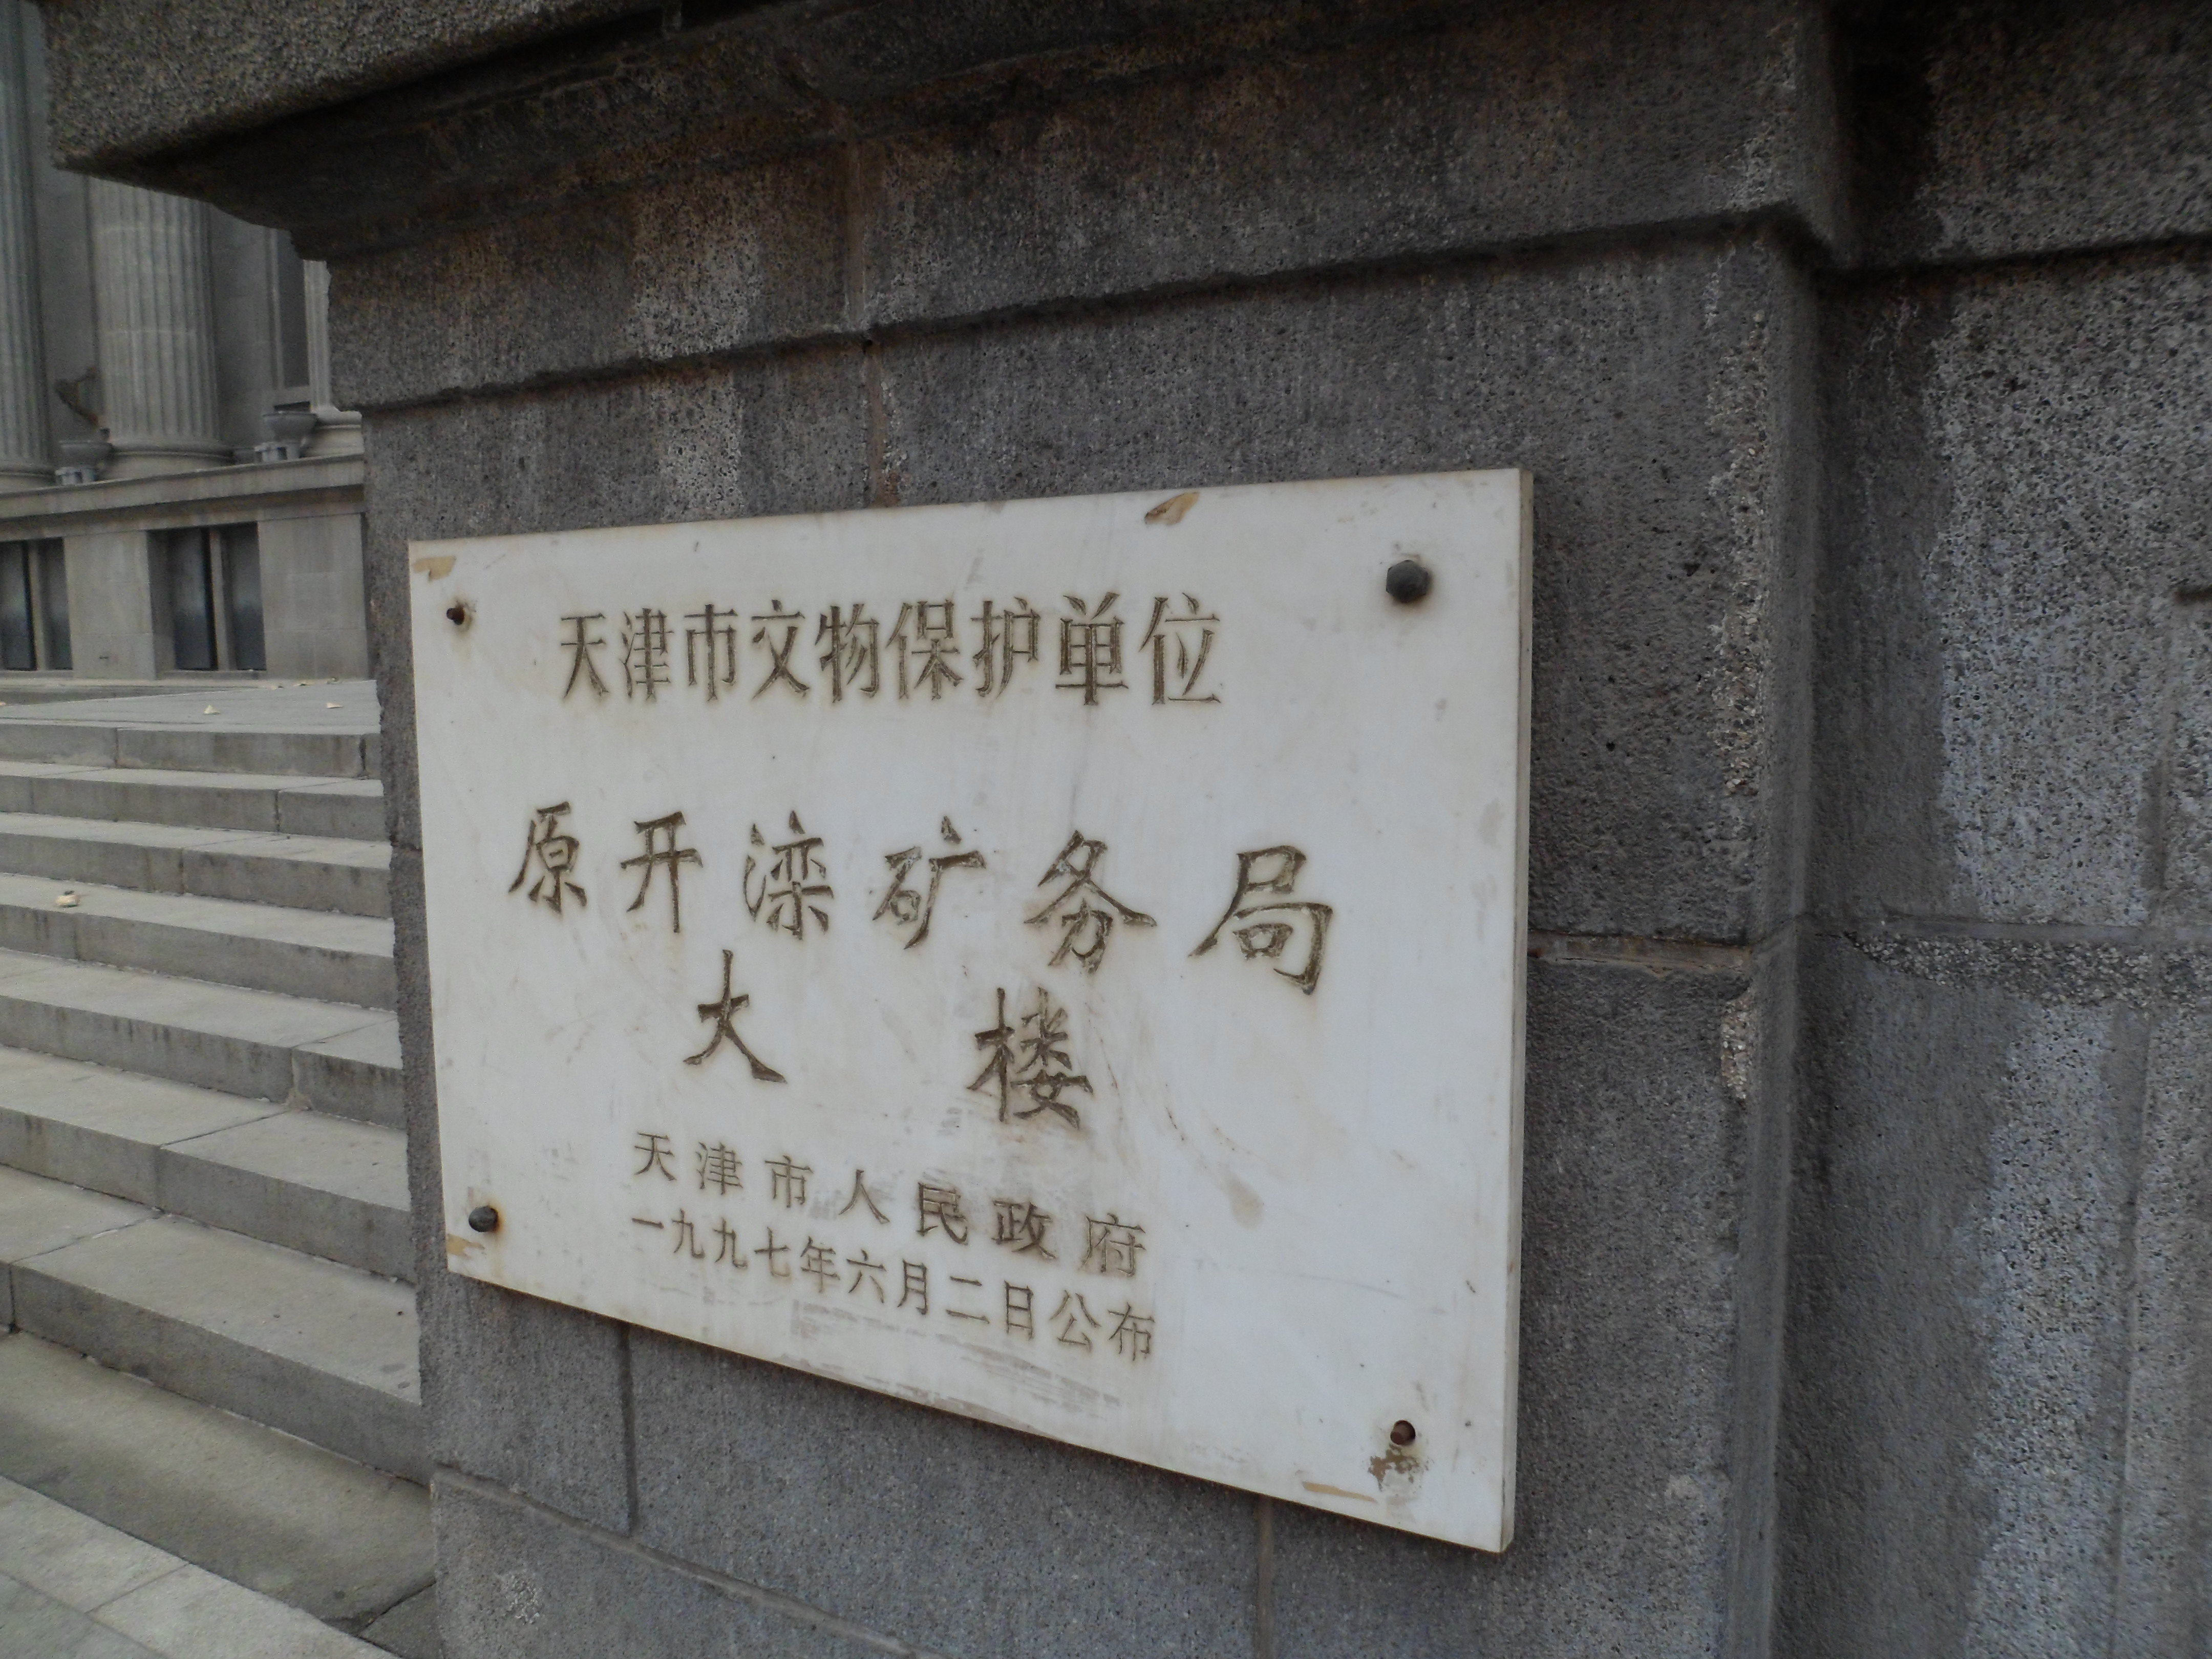 【携程攻略】天津开滦矿务局大楼景点,经常有拍电影得来此,很有意思,